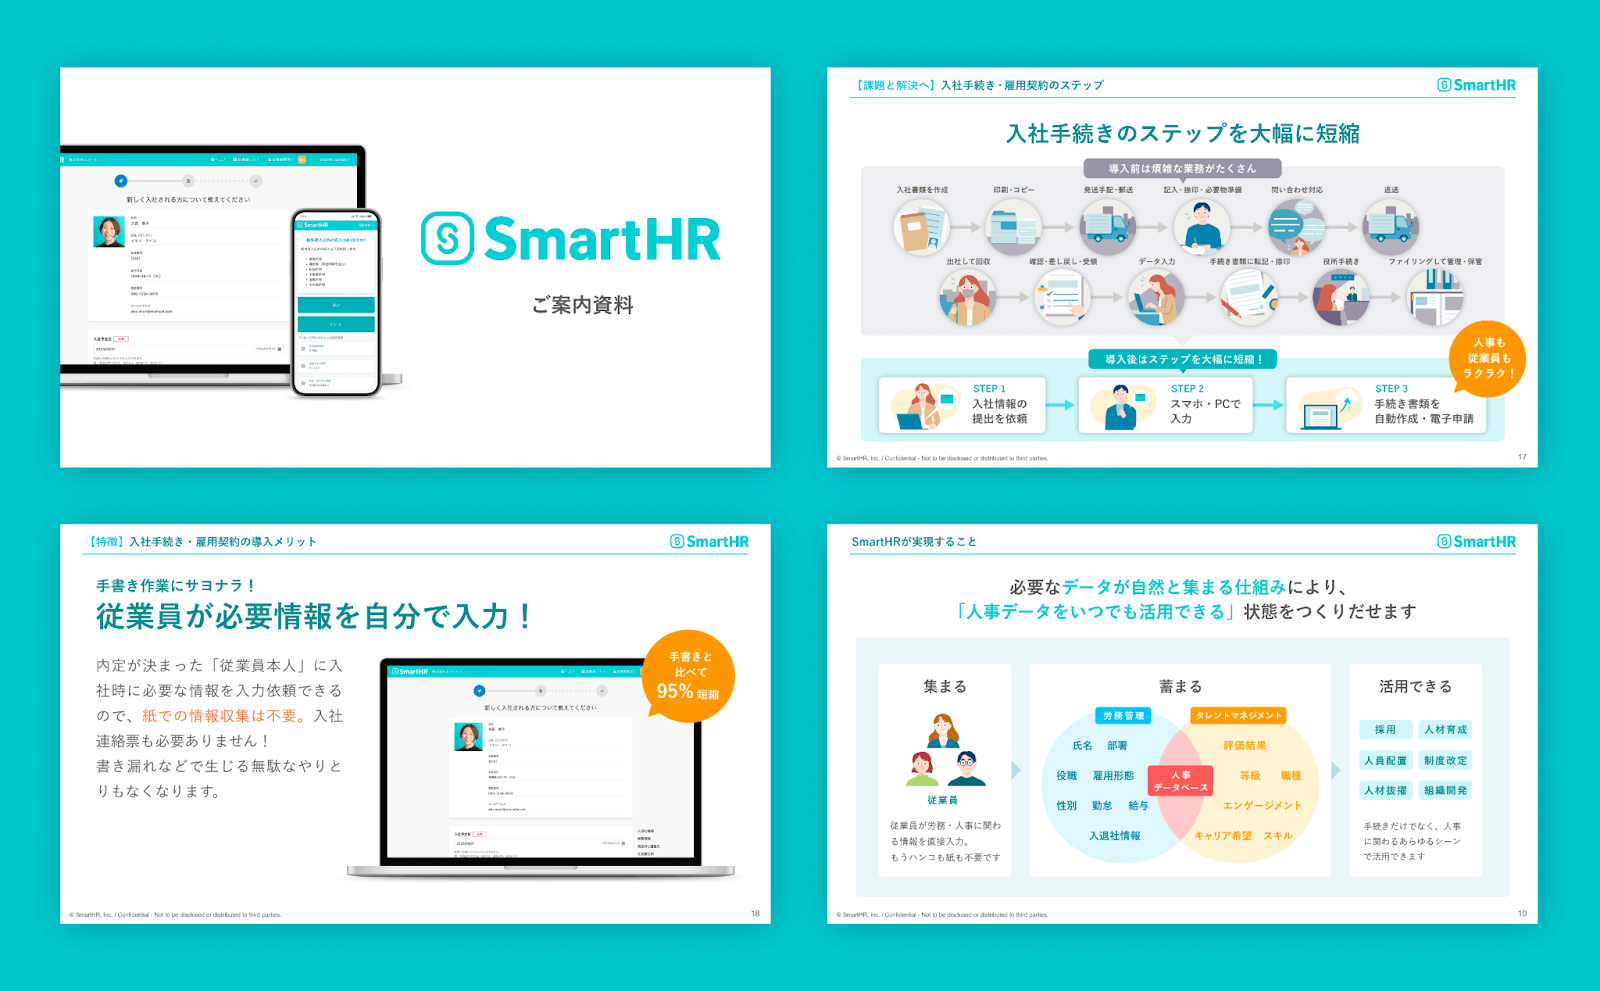 営業資料の例として、4枚のスライドが並べられている。「SmartHR ご案内資料」と書かれた表紙のスライドや、SmartHRが解決することを説明したスライド、SmartHRの特徴や導入後の効果について記載されたスライドが並んでいる。